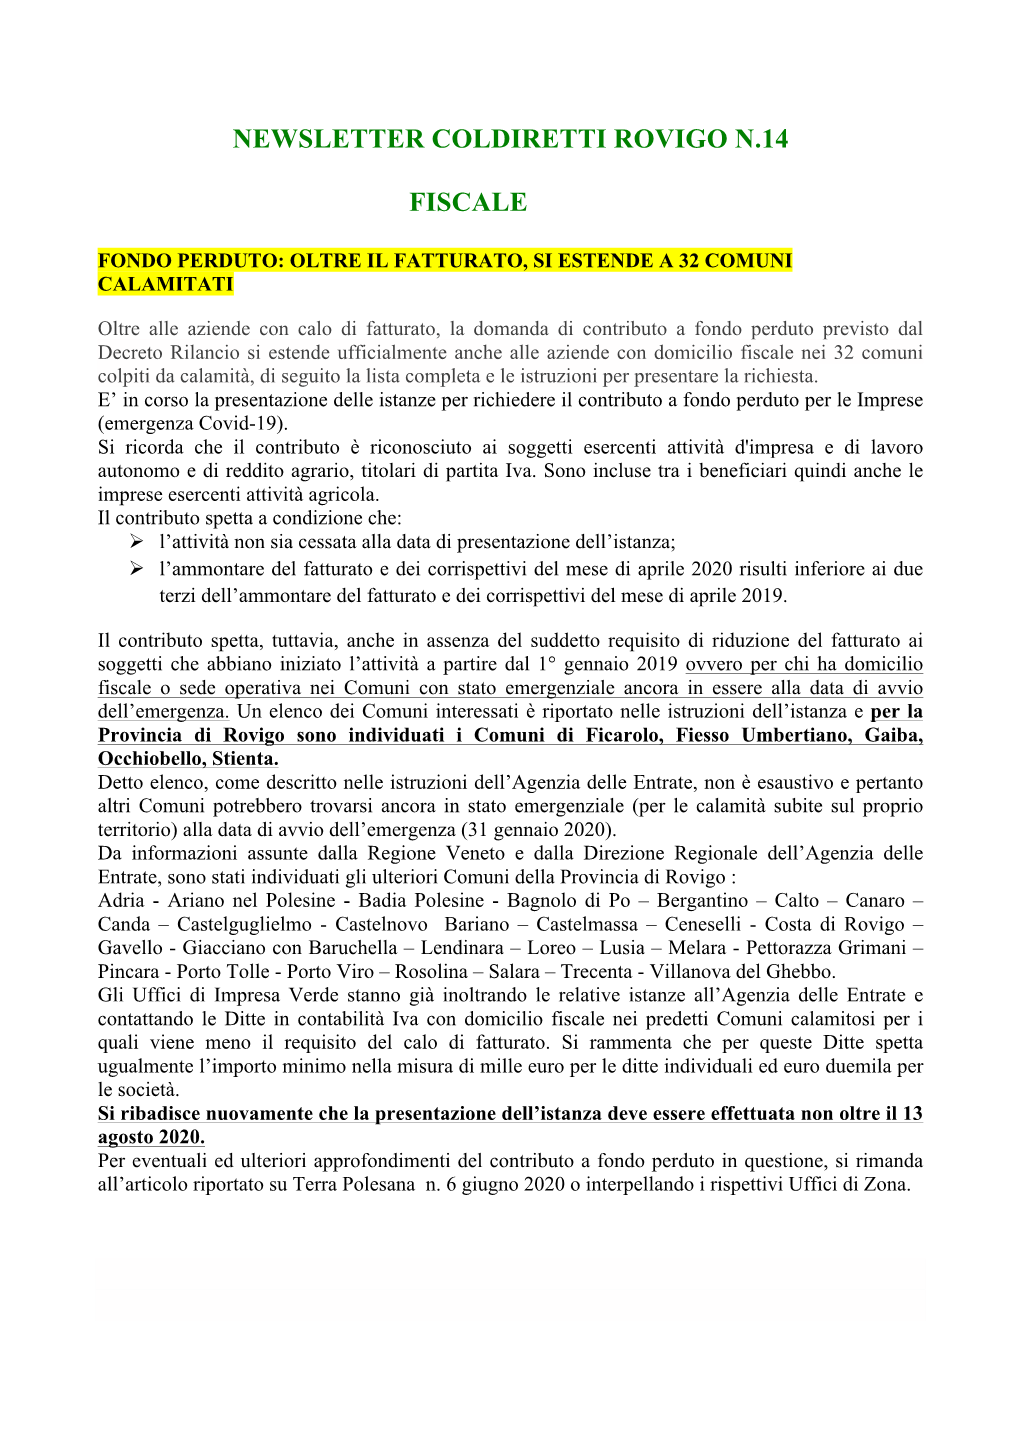 Newsletter Coldiretti Rovigo N.14 Fiscale